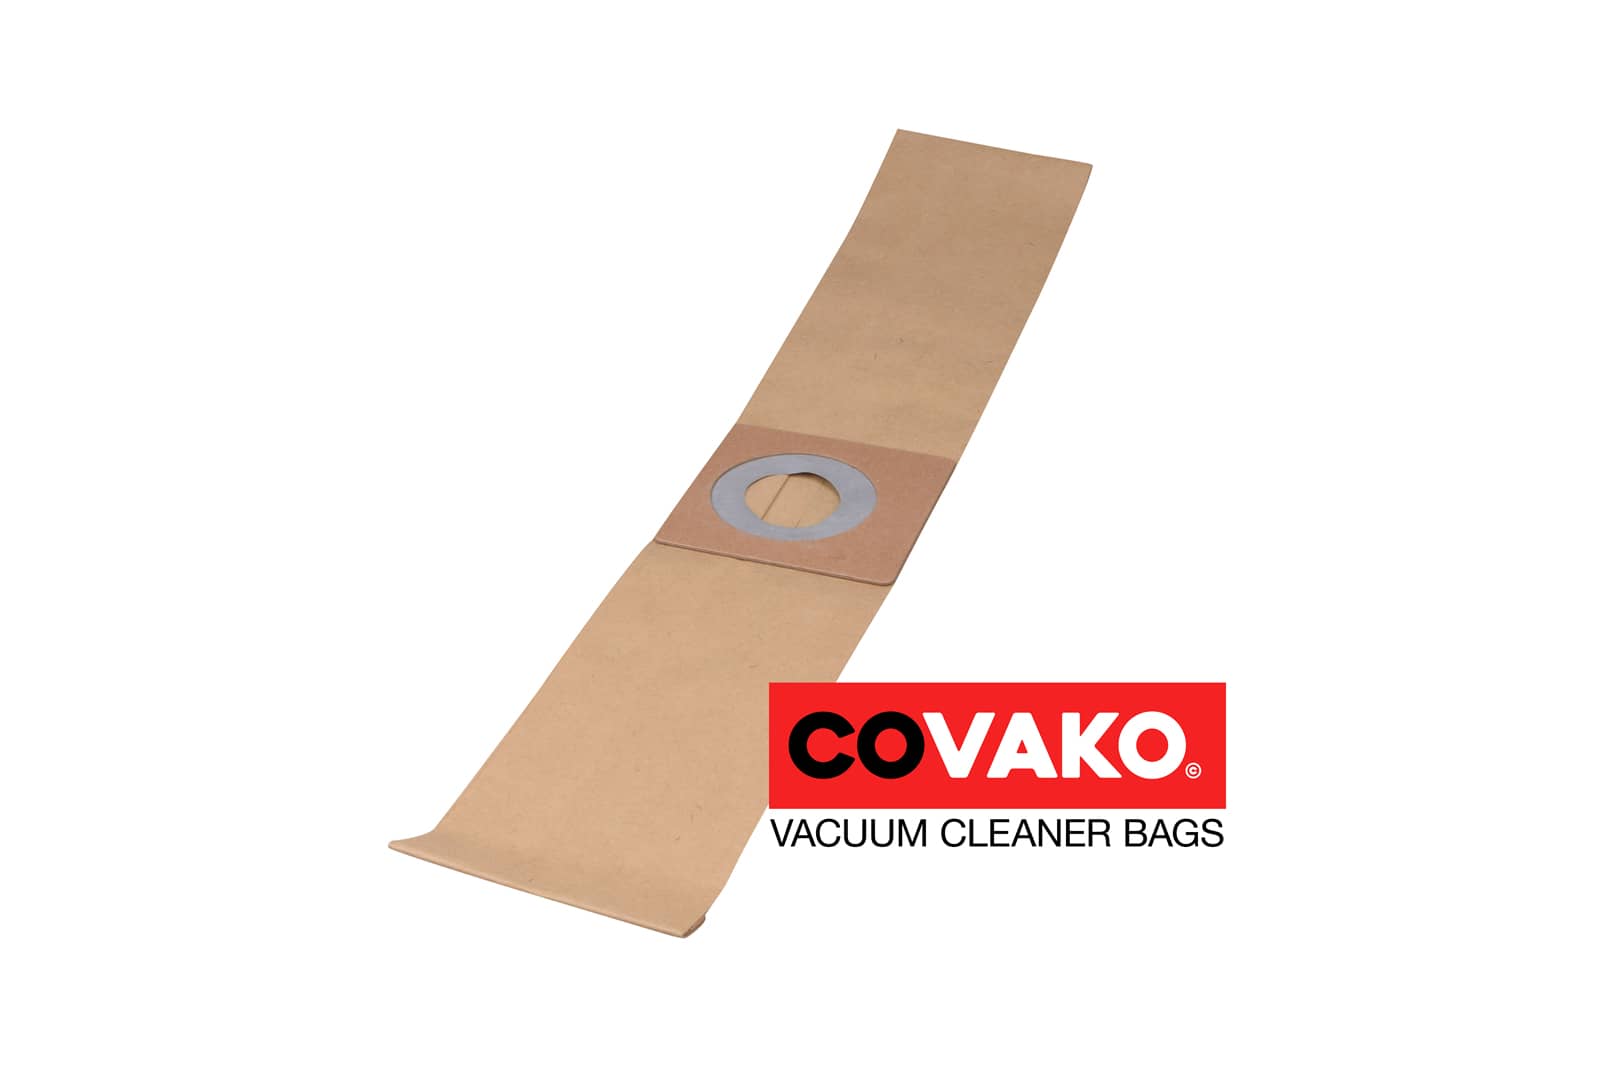 Fakir Micro / Paper - Fakir vacuum cleaner bags